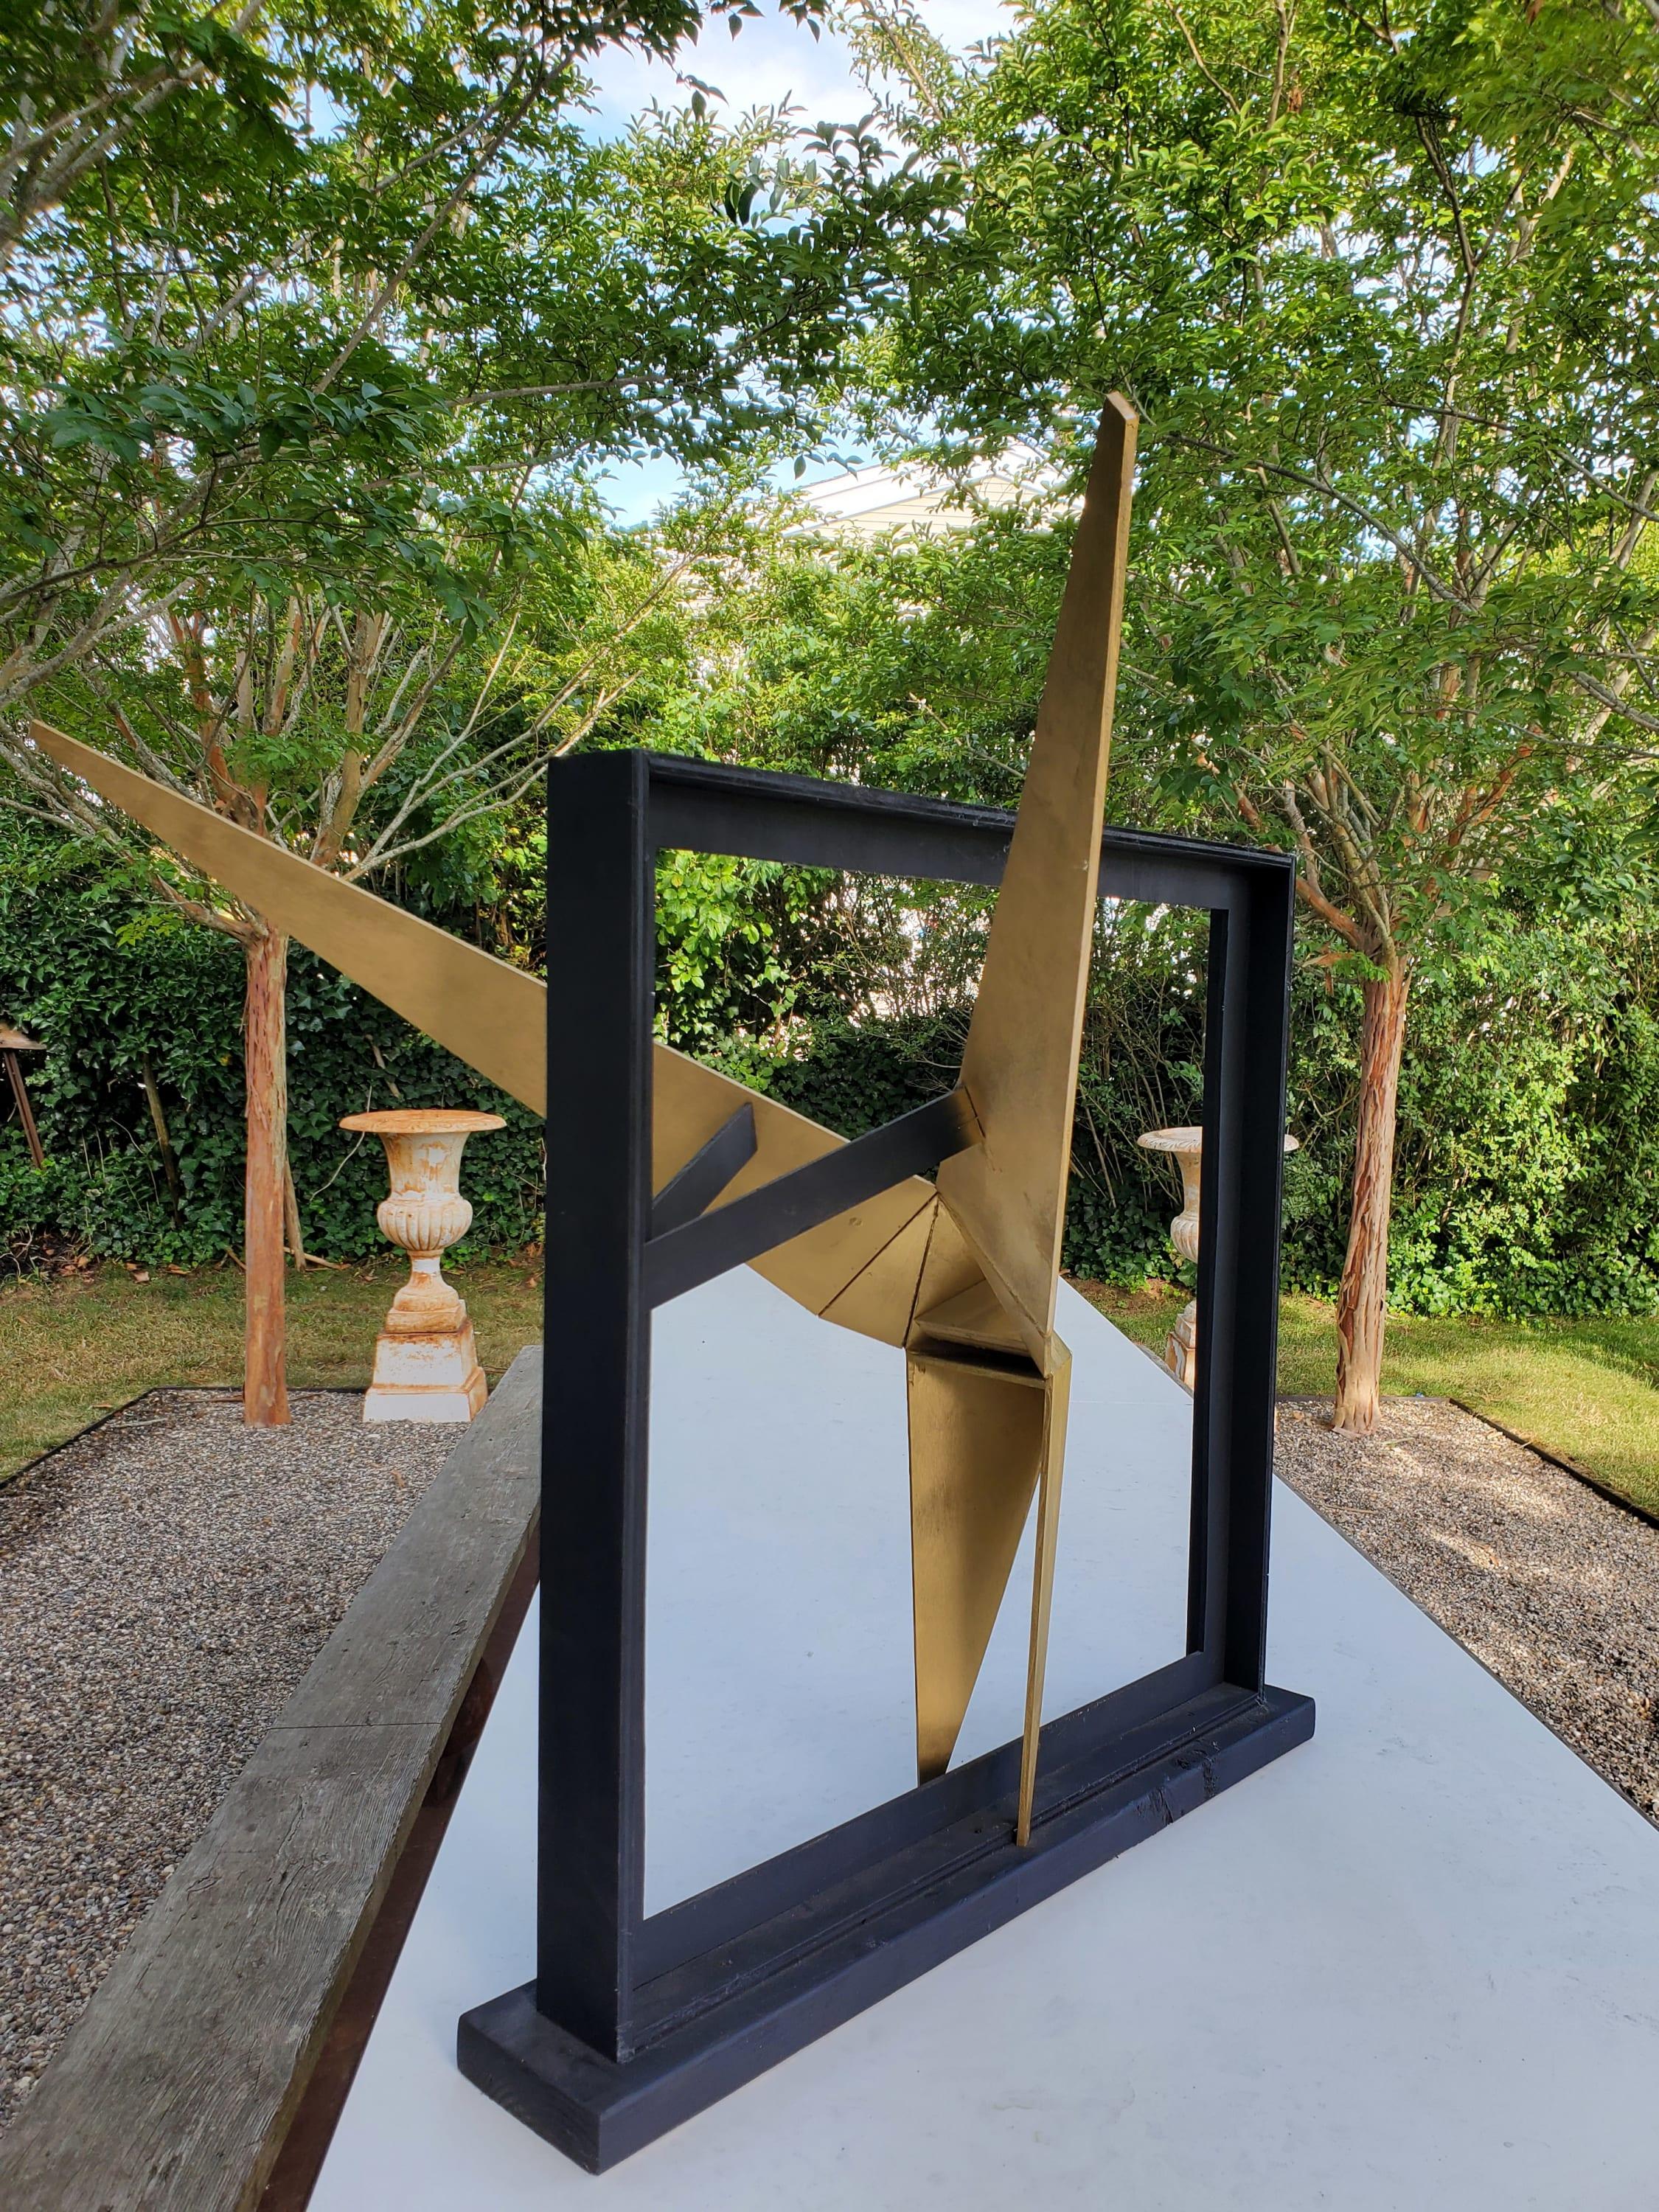 Ballerina de Oro – Sculpture von J. Oscar Molina